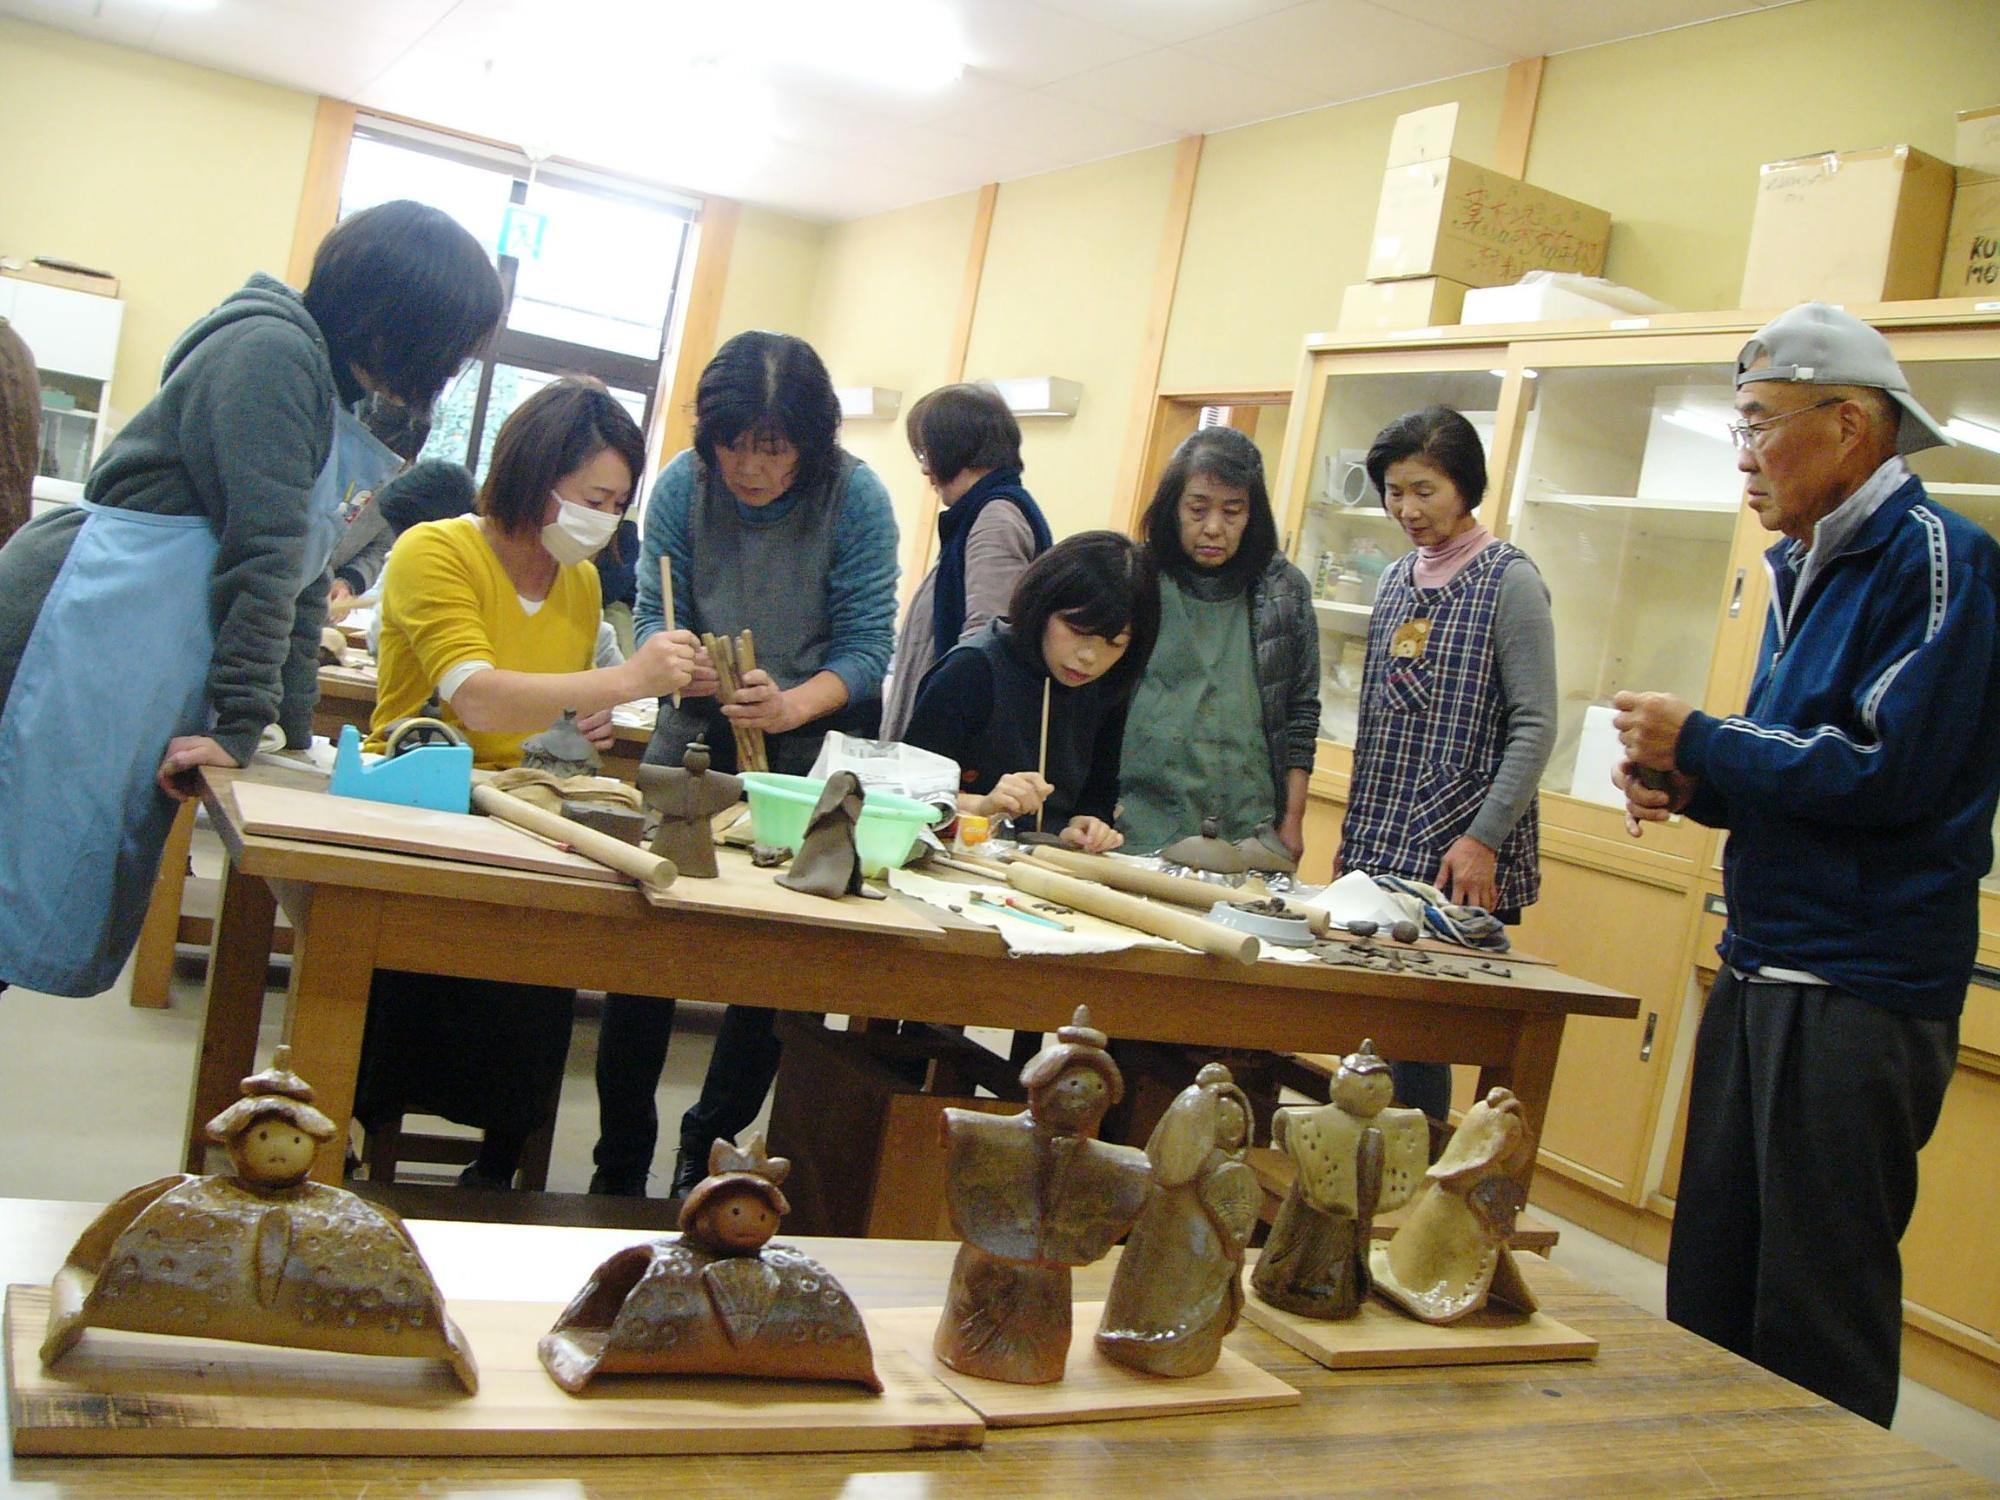 作品の見本を見ながら、陶芸づくりを楽しんでいる陶芸教室参加者らの写真